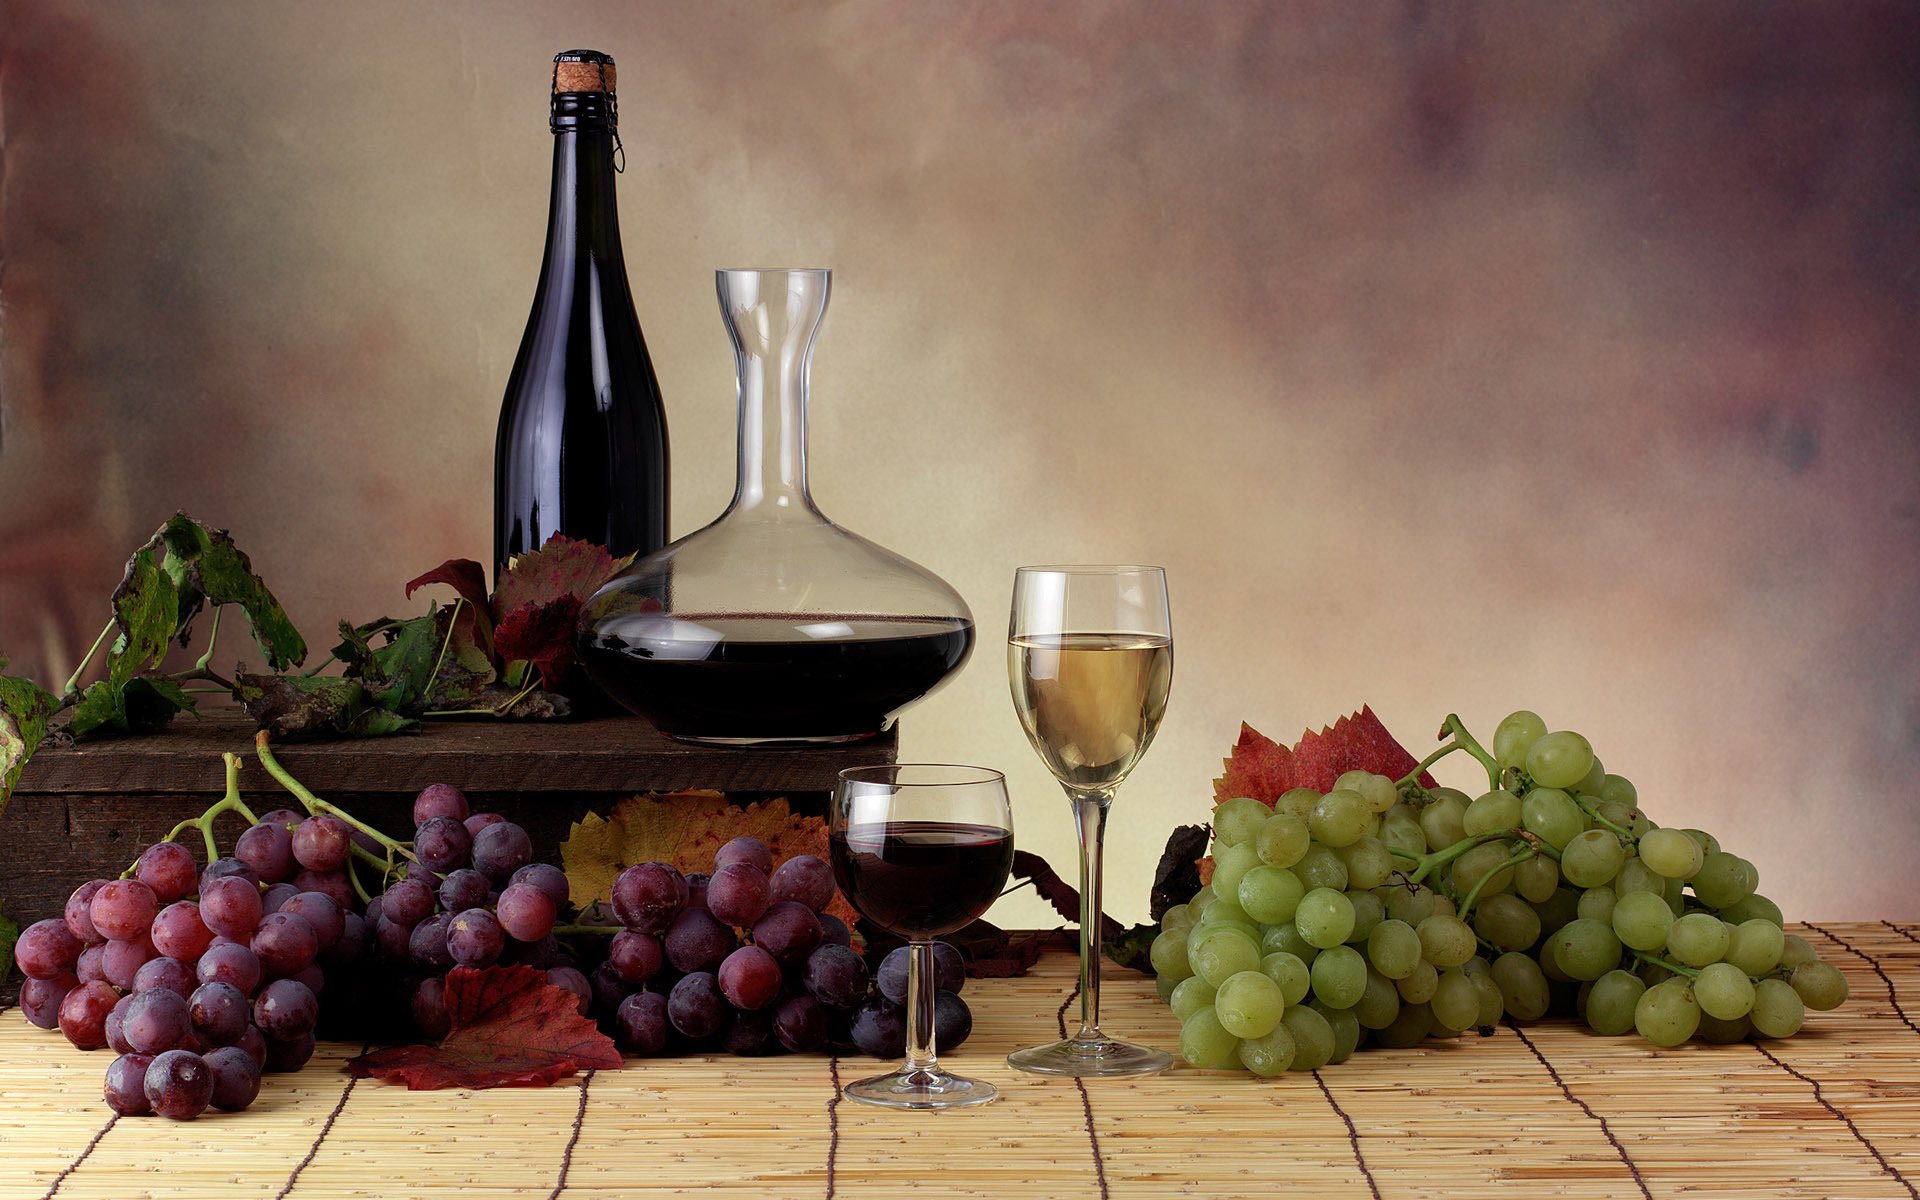 Виноградные гроздья и вино